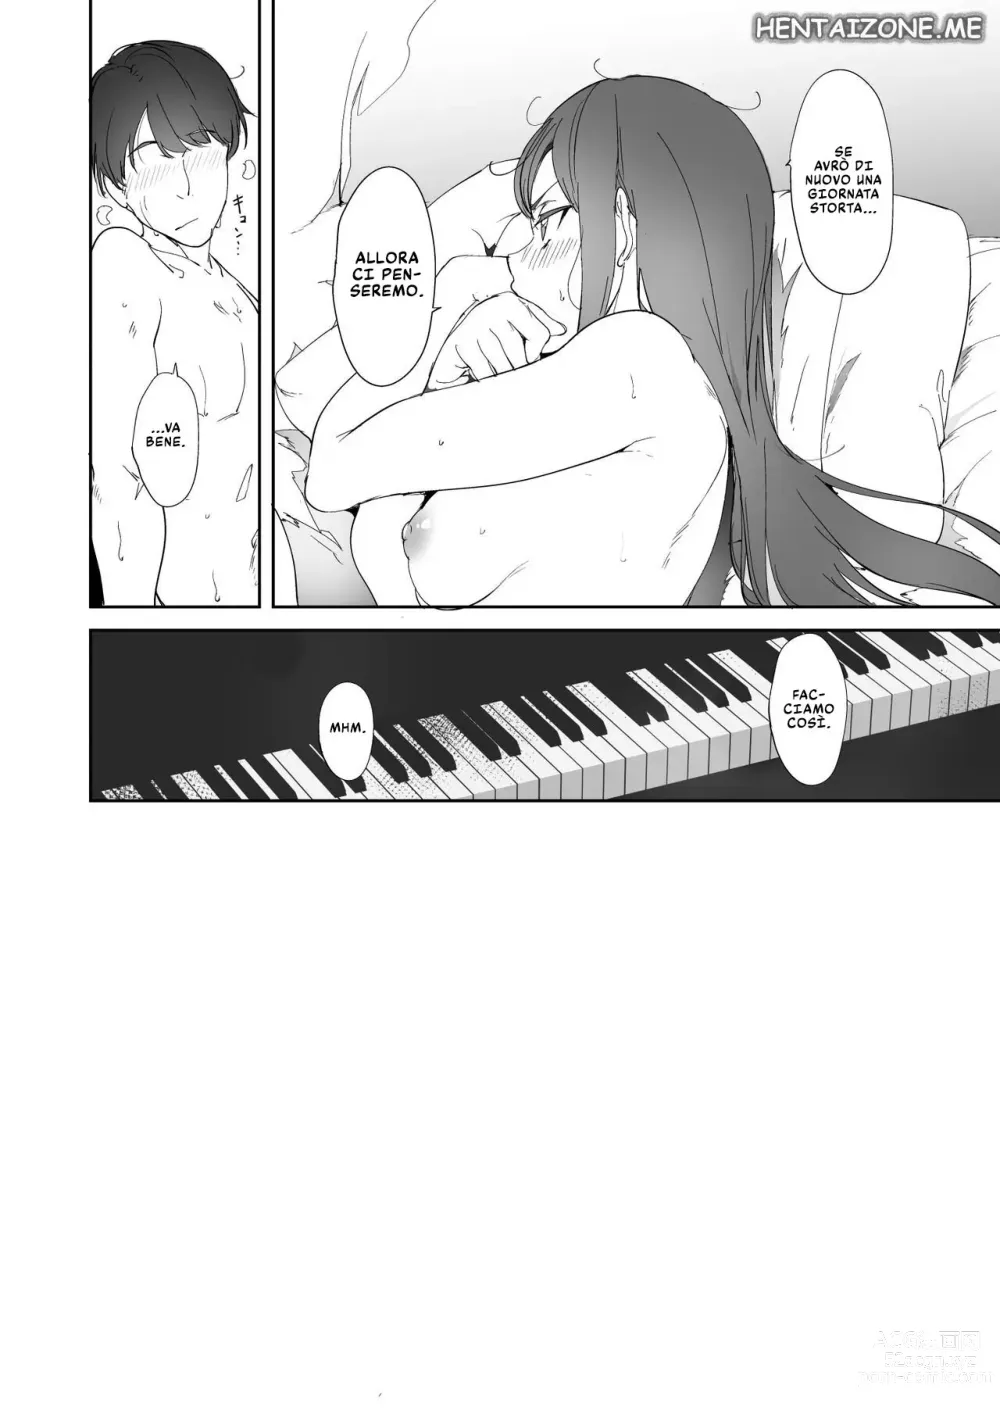 Page 43 of doujinshi Gionata Storta per Sakurauchi